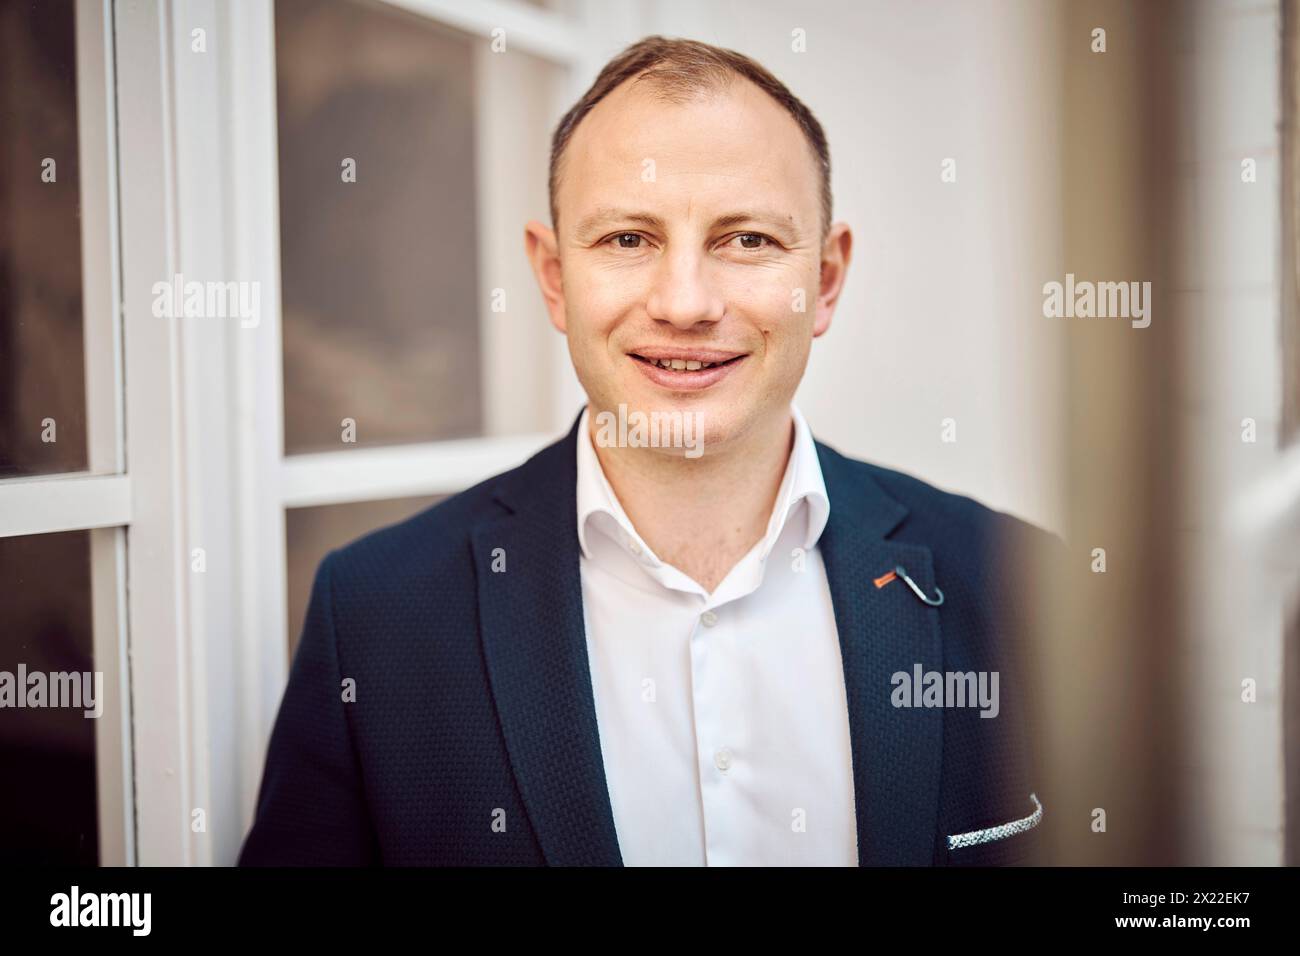 Ondrej Knotek, tschechischer Abgeordneter und Kandidat bei den bevorstehenden Europawahlen, wird in einem Interview für die Tschechische Nachrichtenagentur (CTK) in Prag dargestellt Stockfoto